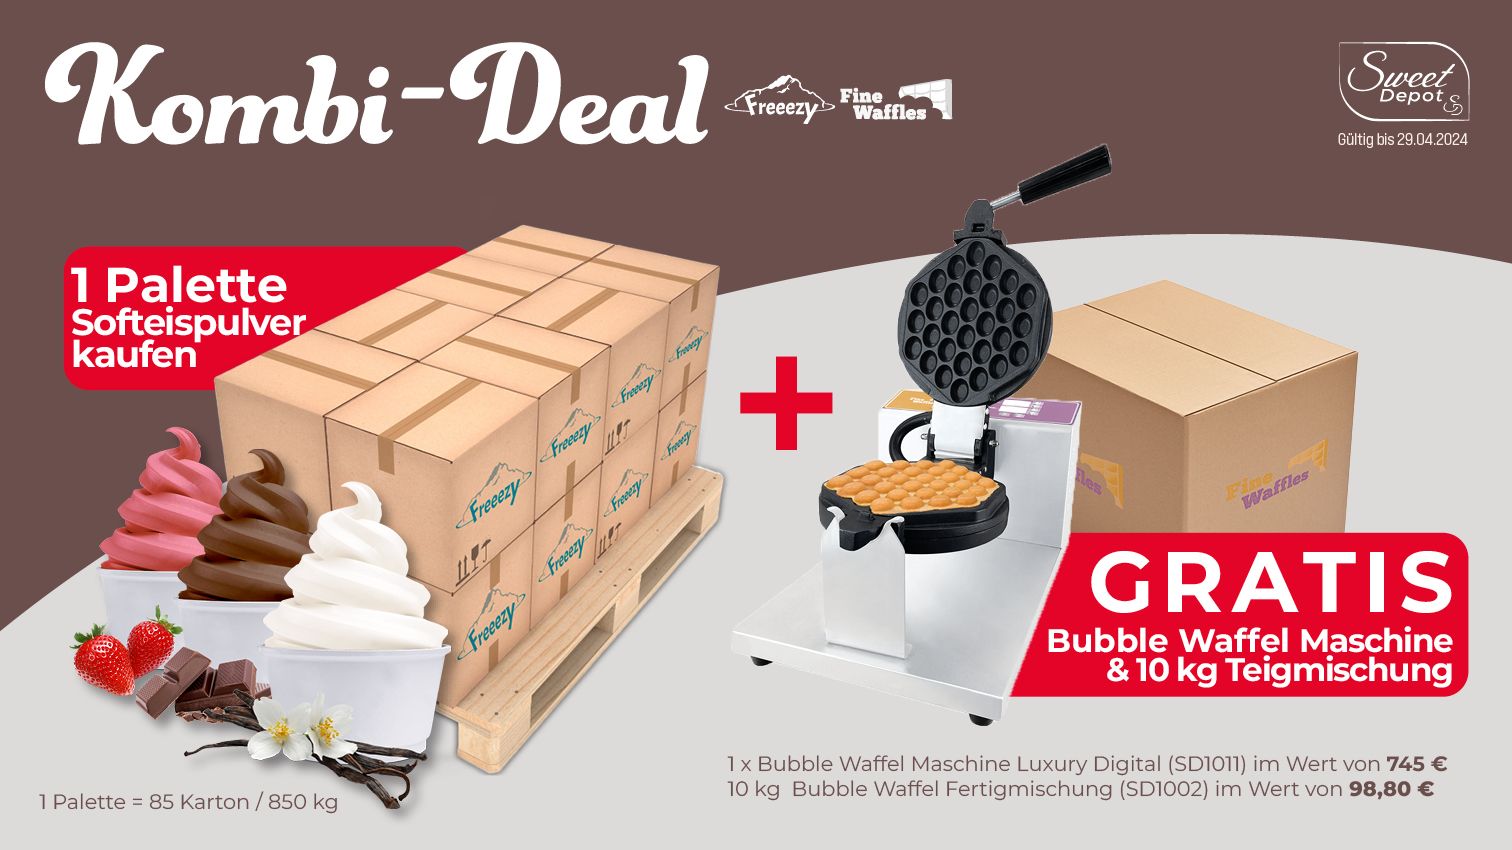 Kombi Deal: Gratis Bubble Waffel Maschine beim Kauf von Softeispulver